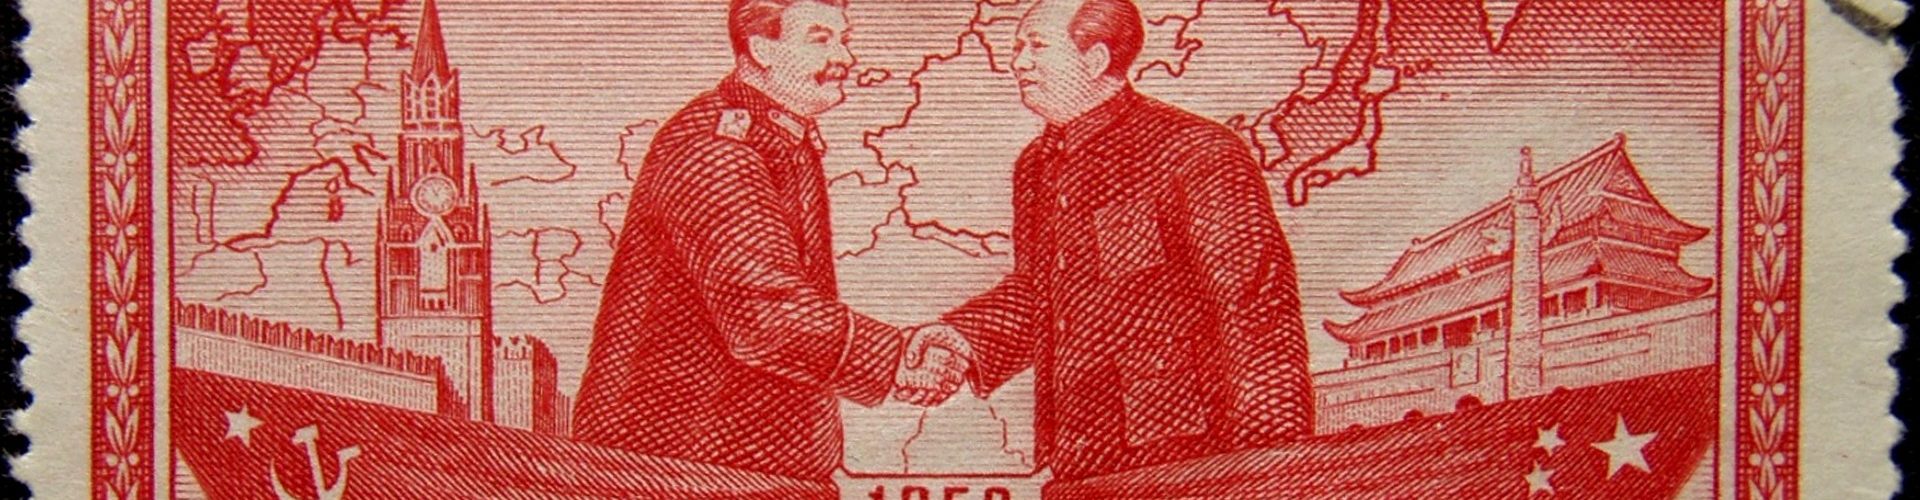 Mao og Stalin